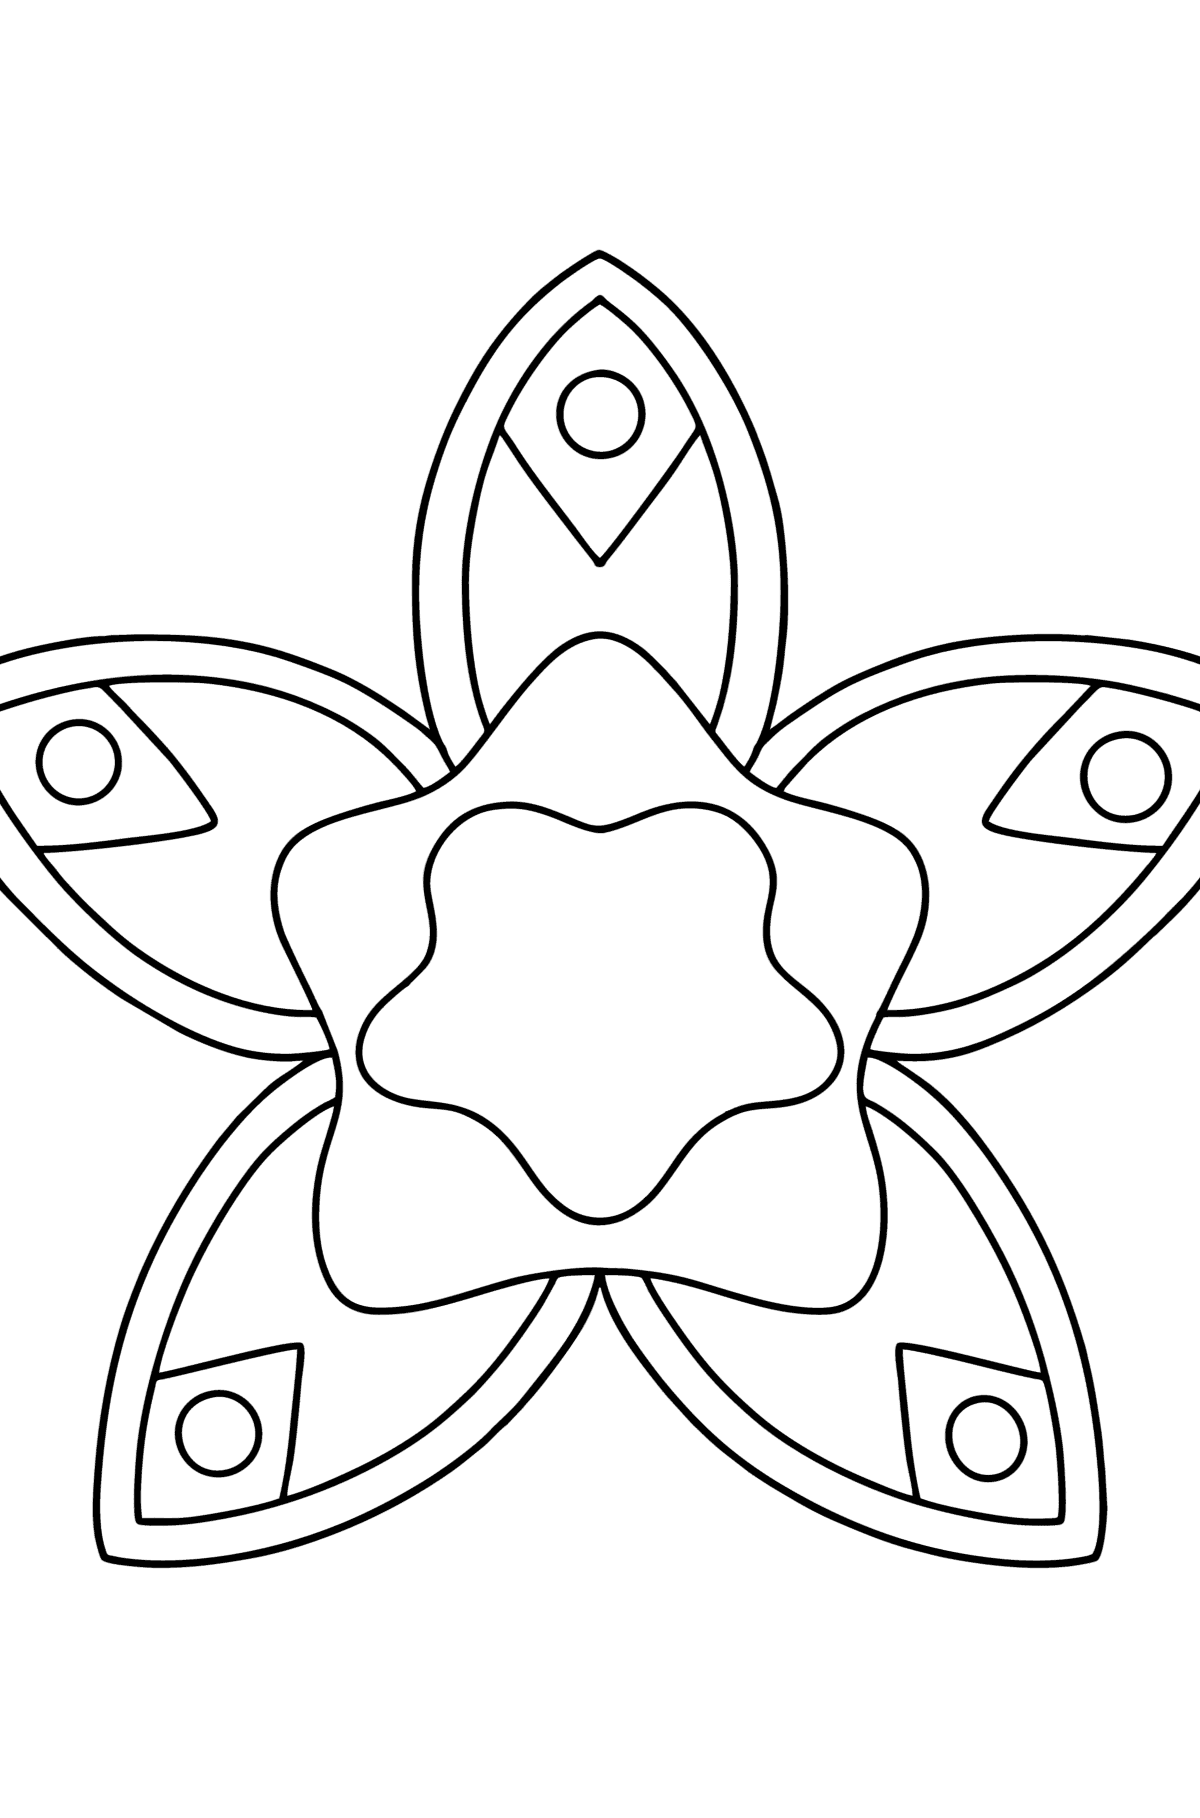 Desenho para colorir Mandala floral simples - Imagens para Colorir para Crianças